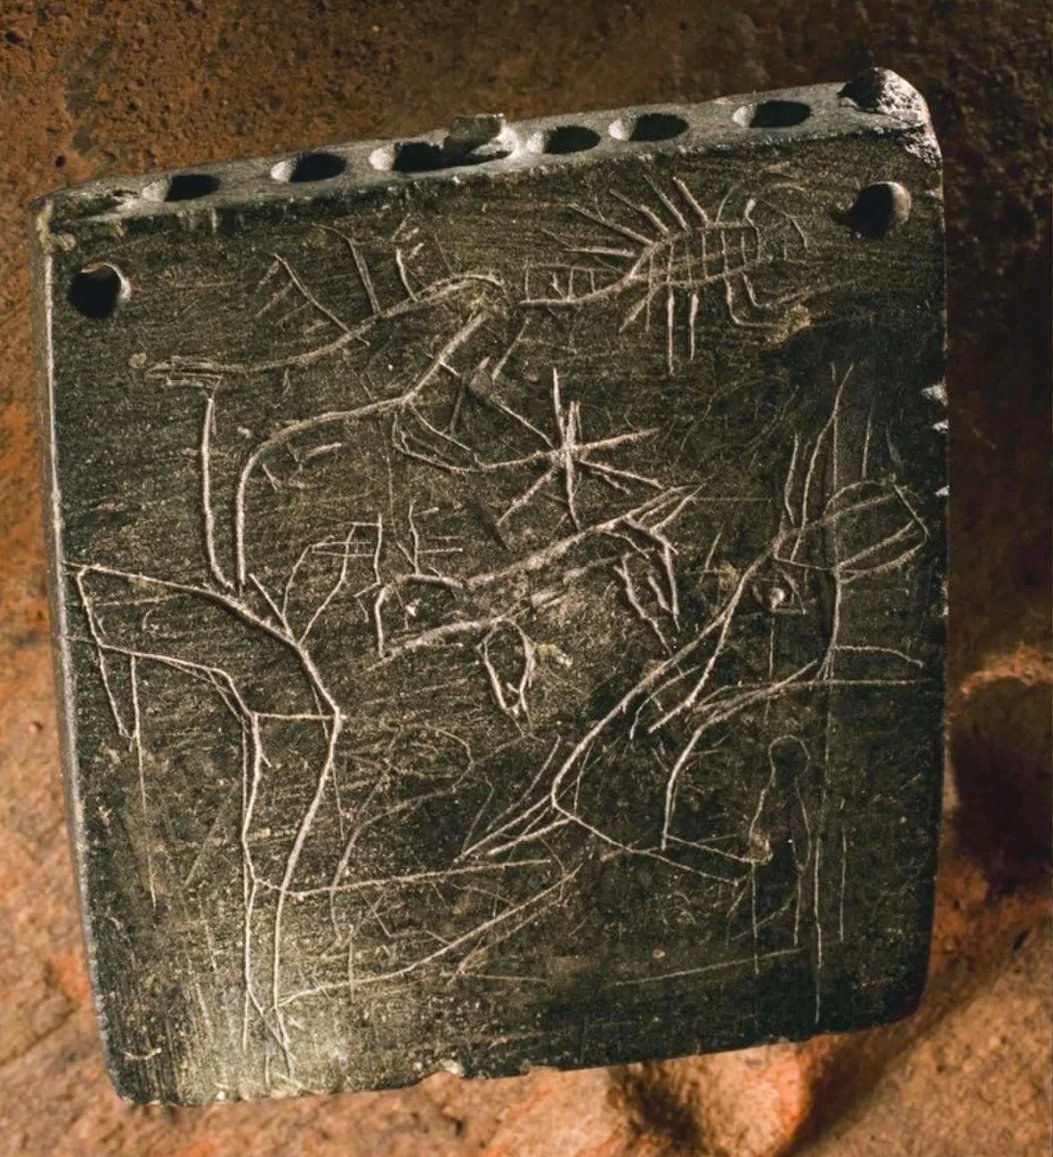 Staroveké zaklínadlo malo na prednej a zadnej strane ilustrácie zvierat, ako sú škorpióny (tu zobrazené). Analýza písma zaklínača naznačuje, že bolo napísané niekedy medzi rokmi 850 pred Kristom a 800 pred Kristom, a preto je tento nápis najstarším aramejským zaklínadlom, aké sa kedy našlo. © Foto Roberto Ceccacci/S láskavým dovolením expedície Chicago-Tübingen do Zincirli